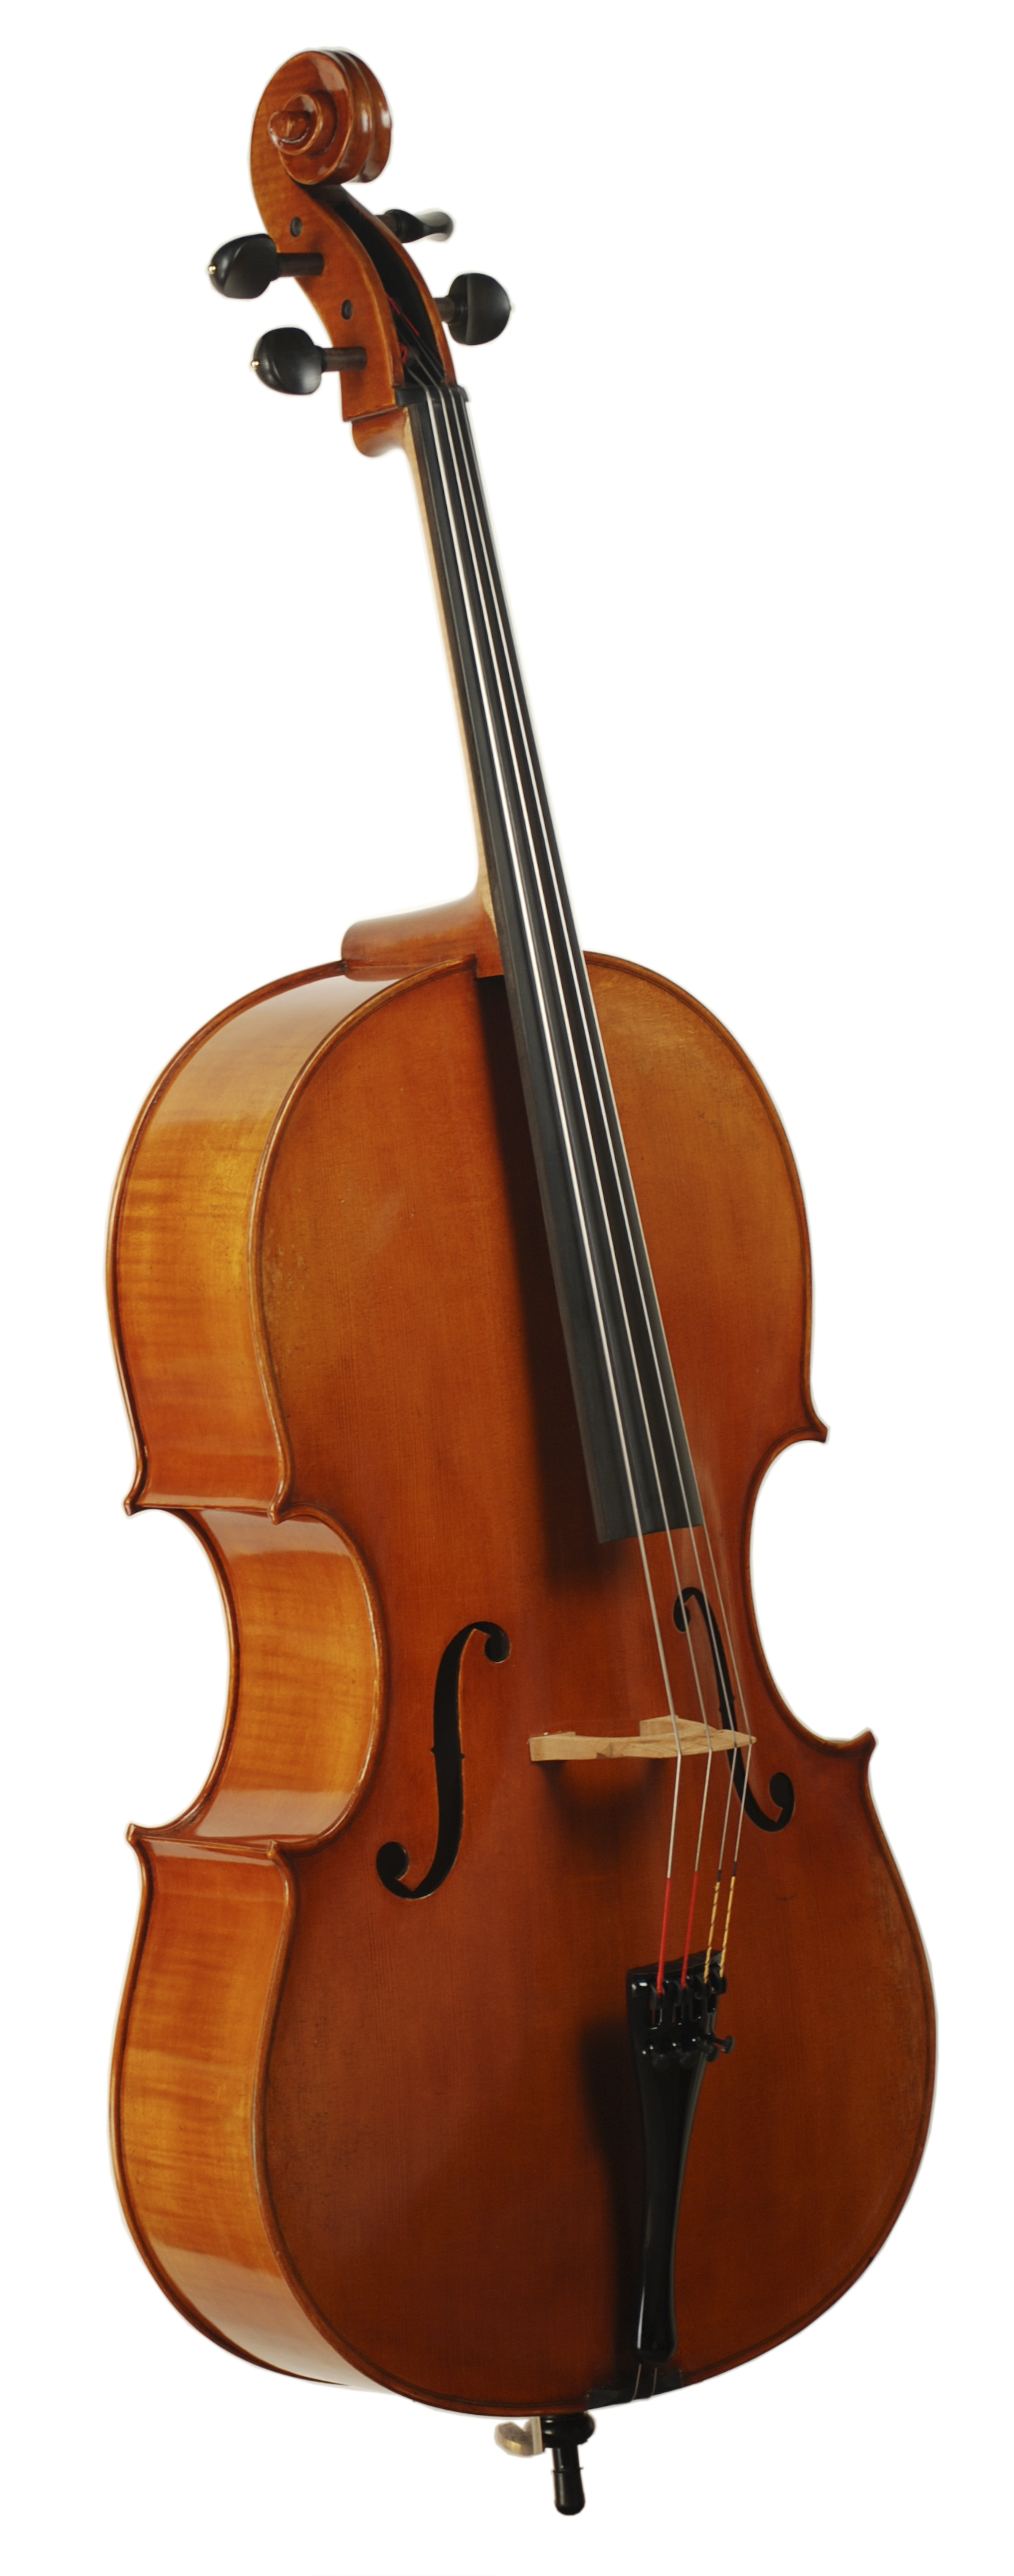 Cello Gravur Schlüsselanhänger Cellist als Bildgravur & gratis Gravurtext 